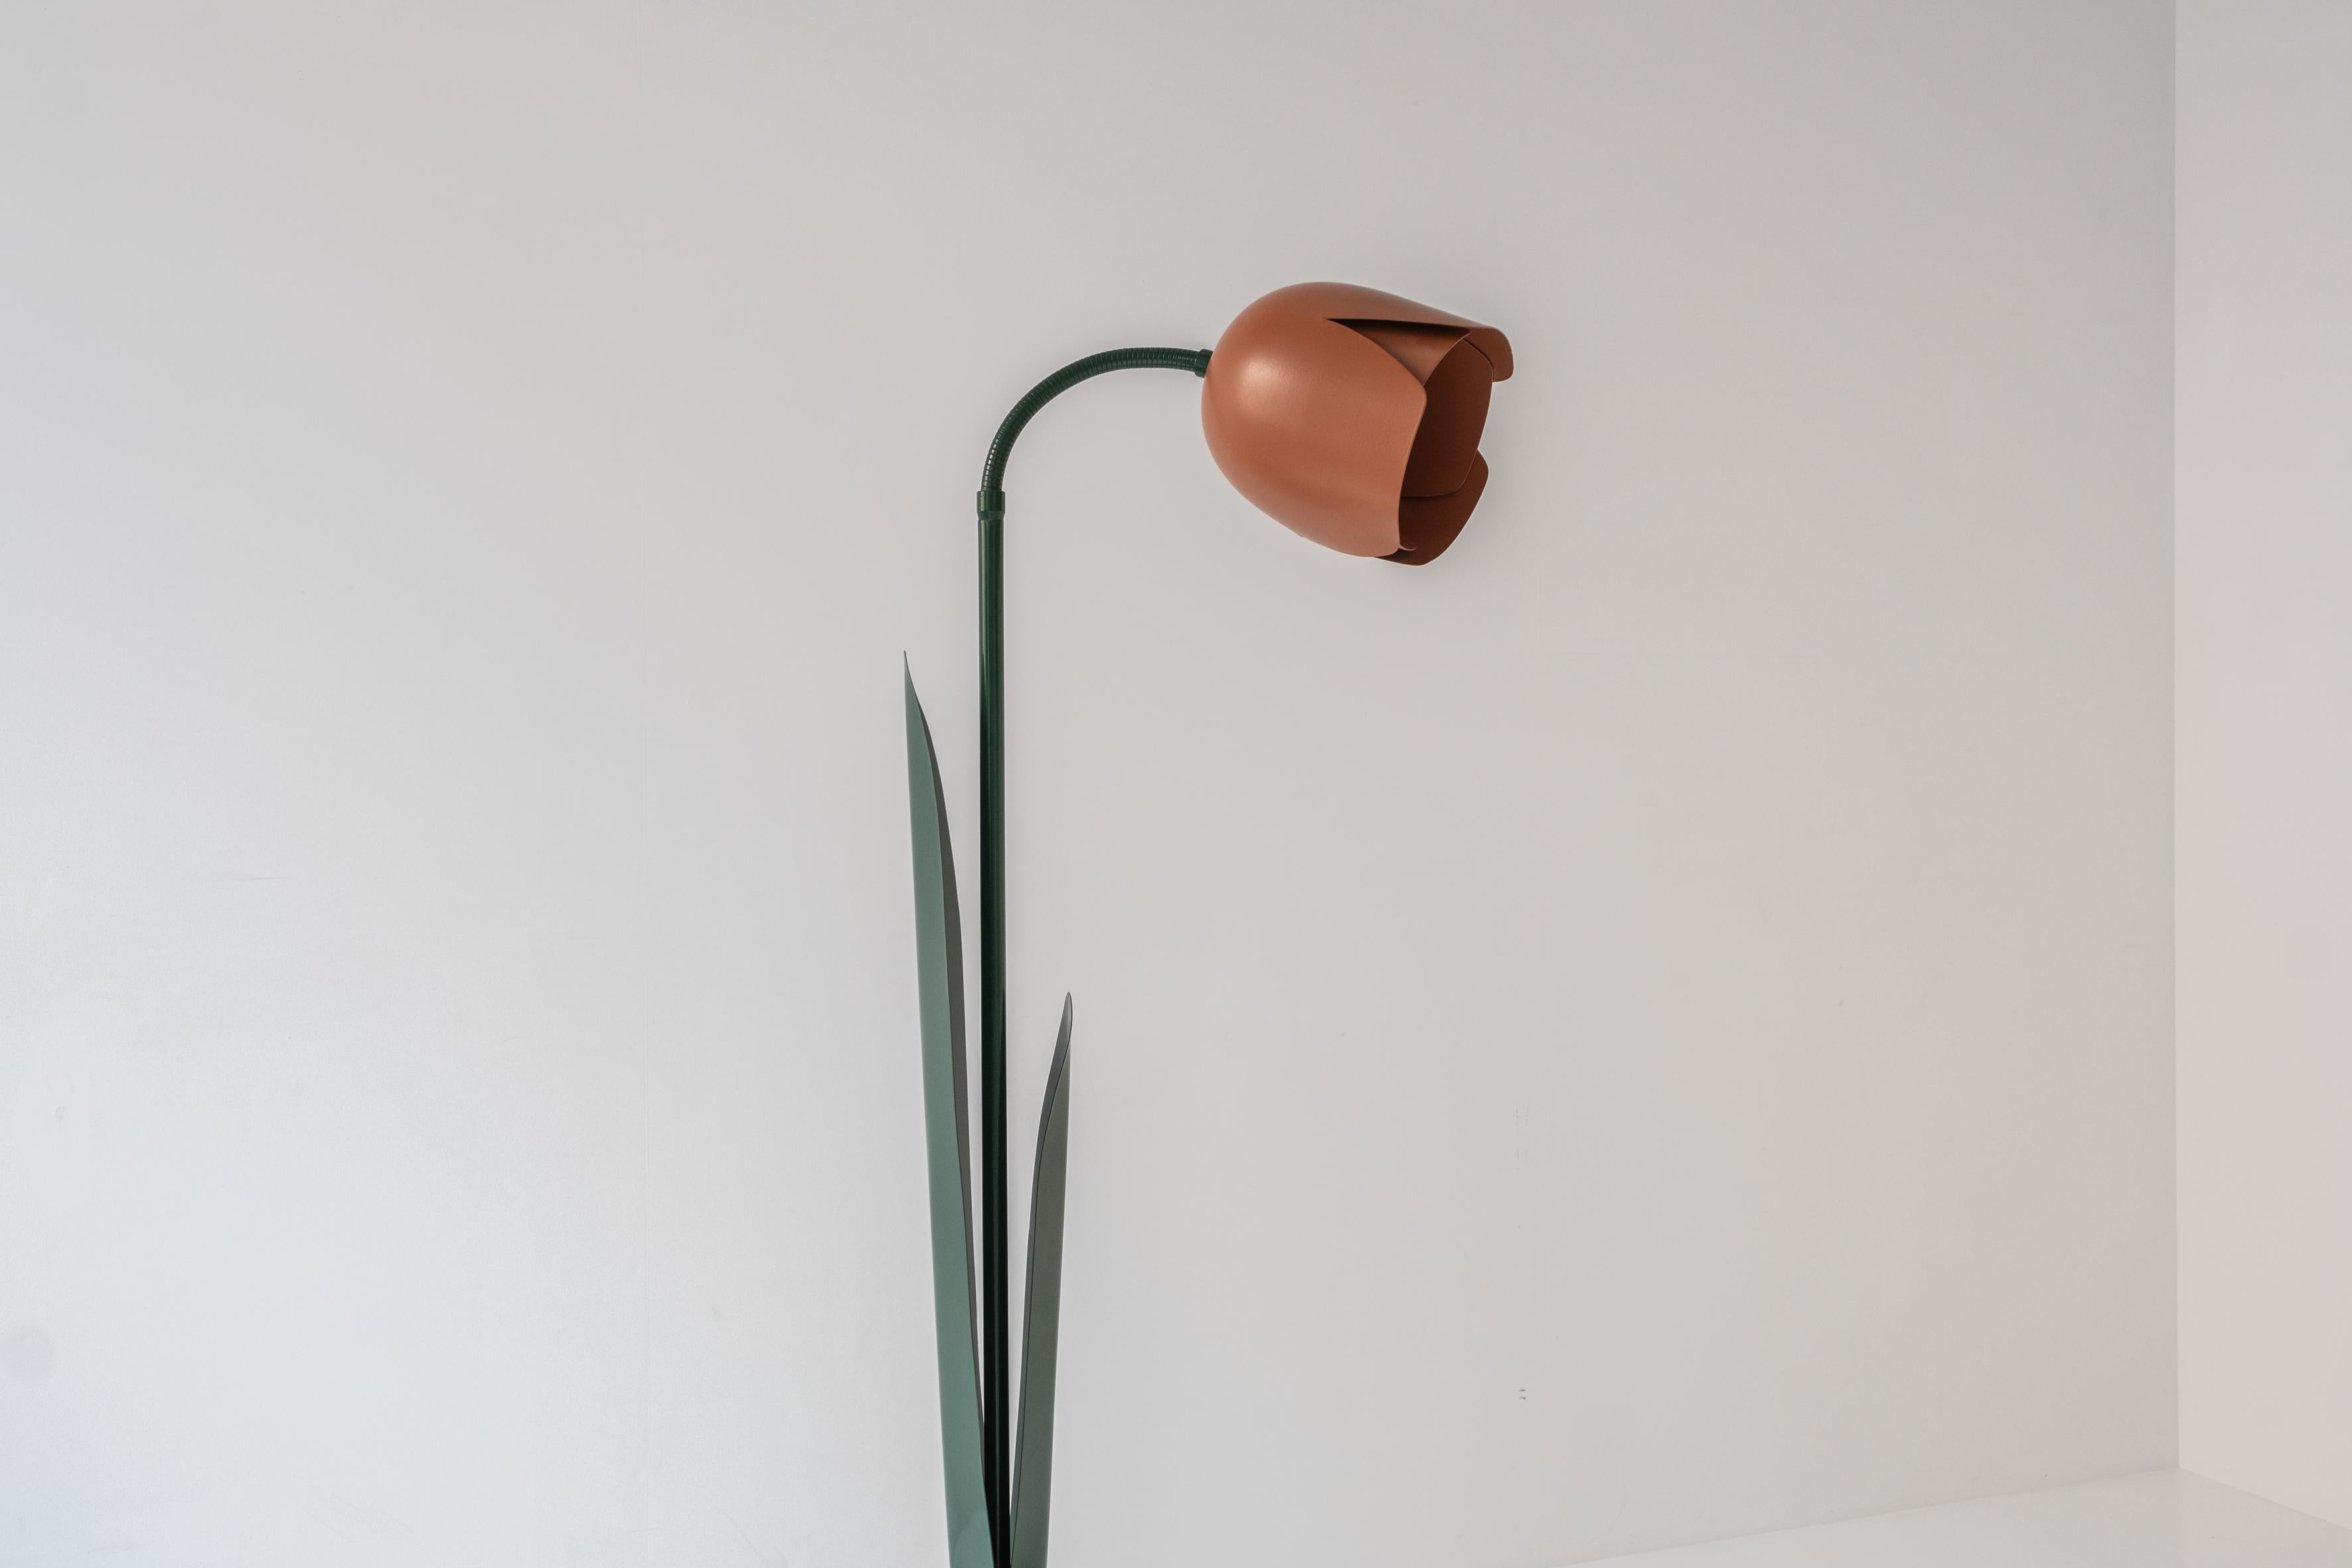 Post-Modern Lovely postmodern tulip flower floor lamp by Peter Bliss for Bliss, UK 1980’s.